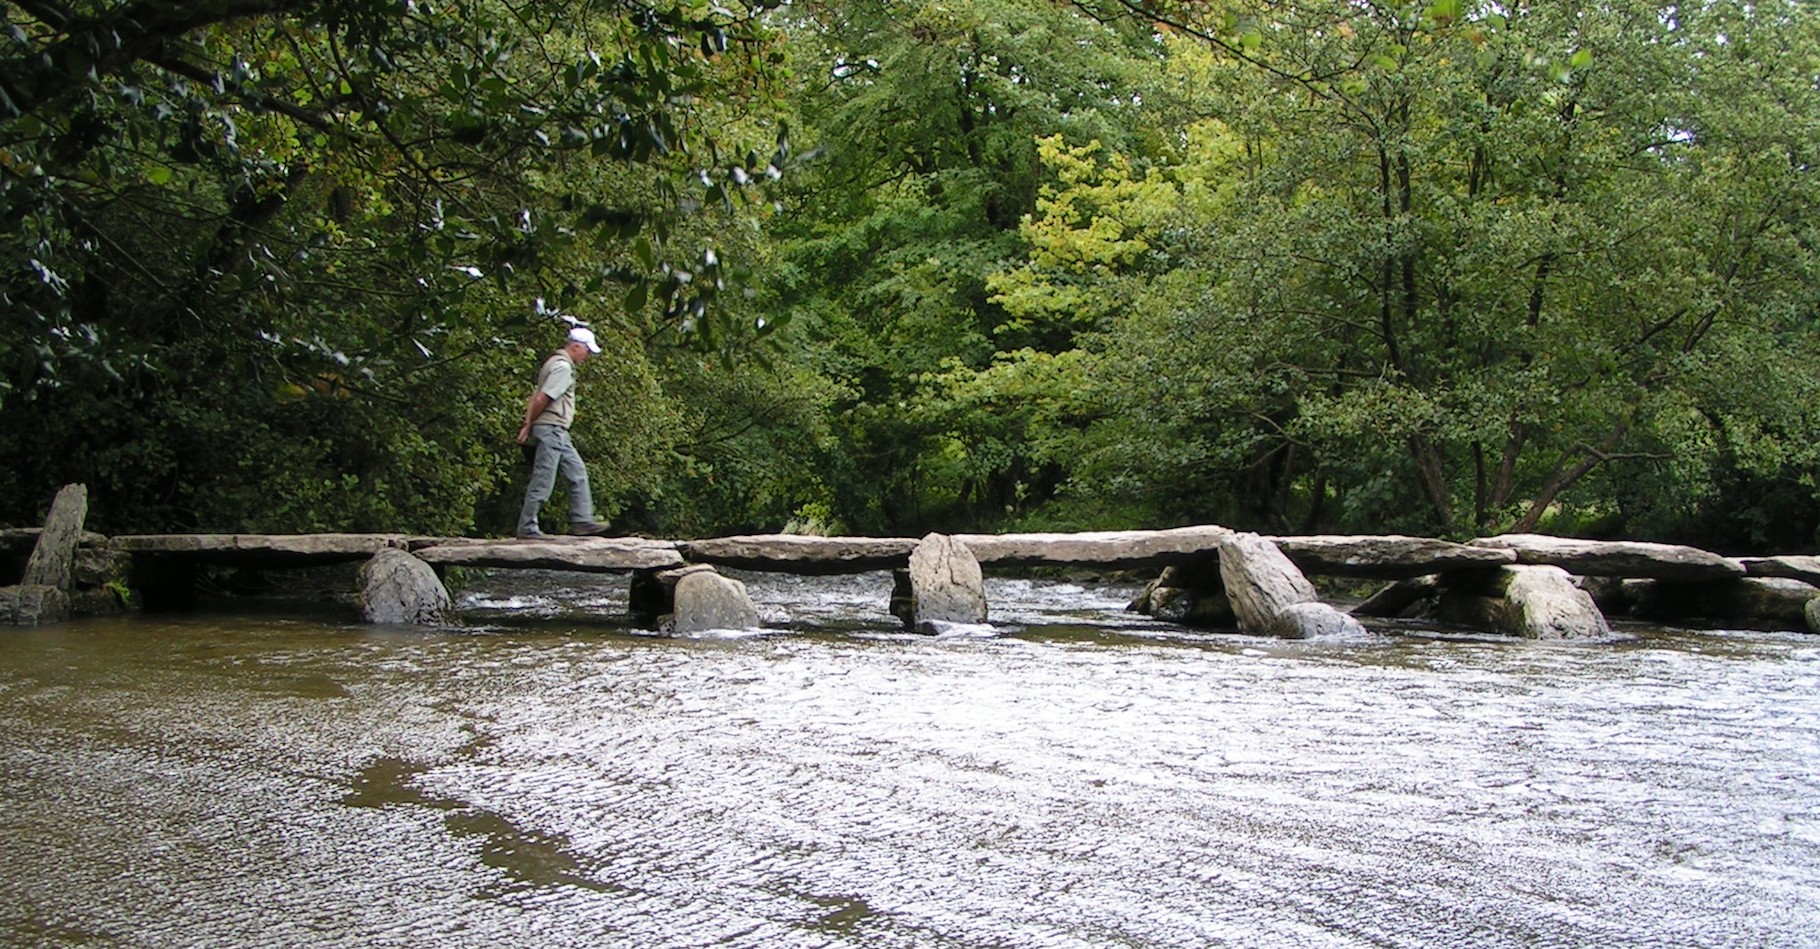 Les premiers ponts étaient très rudimentaires. Aujourd’hui, certains permettent de franchir de nombreux obstacles et on les appelle plutôt des viaducs. © Stefan Kühn, Wikipedia, CC by-sa 3.0